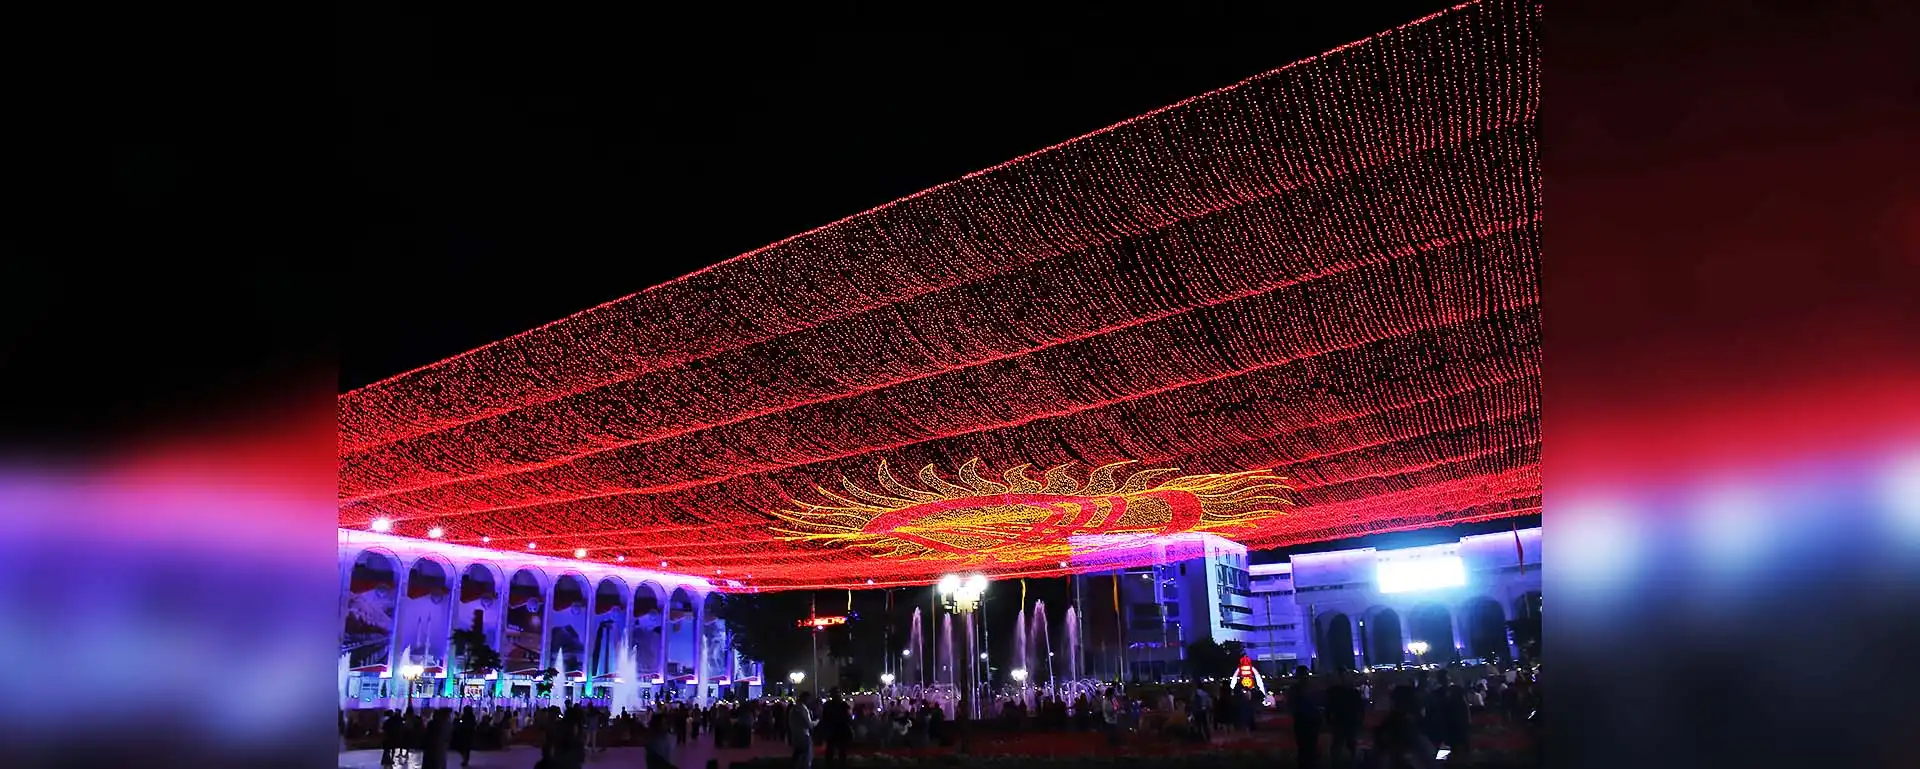 Праздничное оформление Площади Ала- Тоо, 2017г.